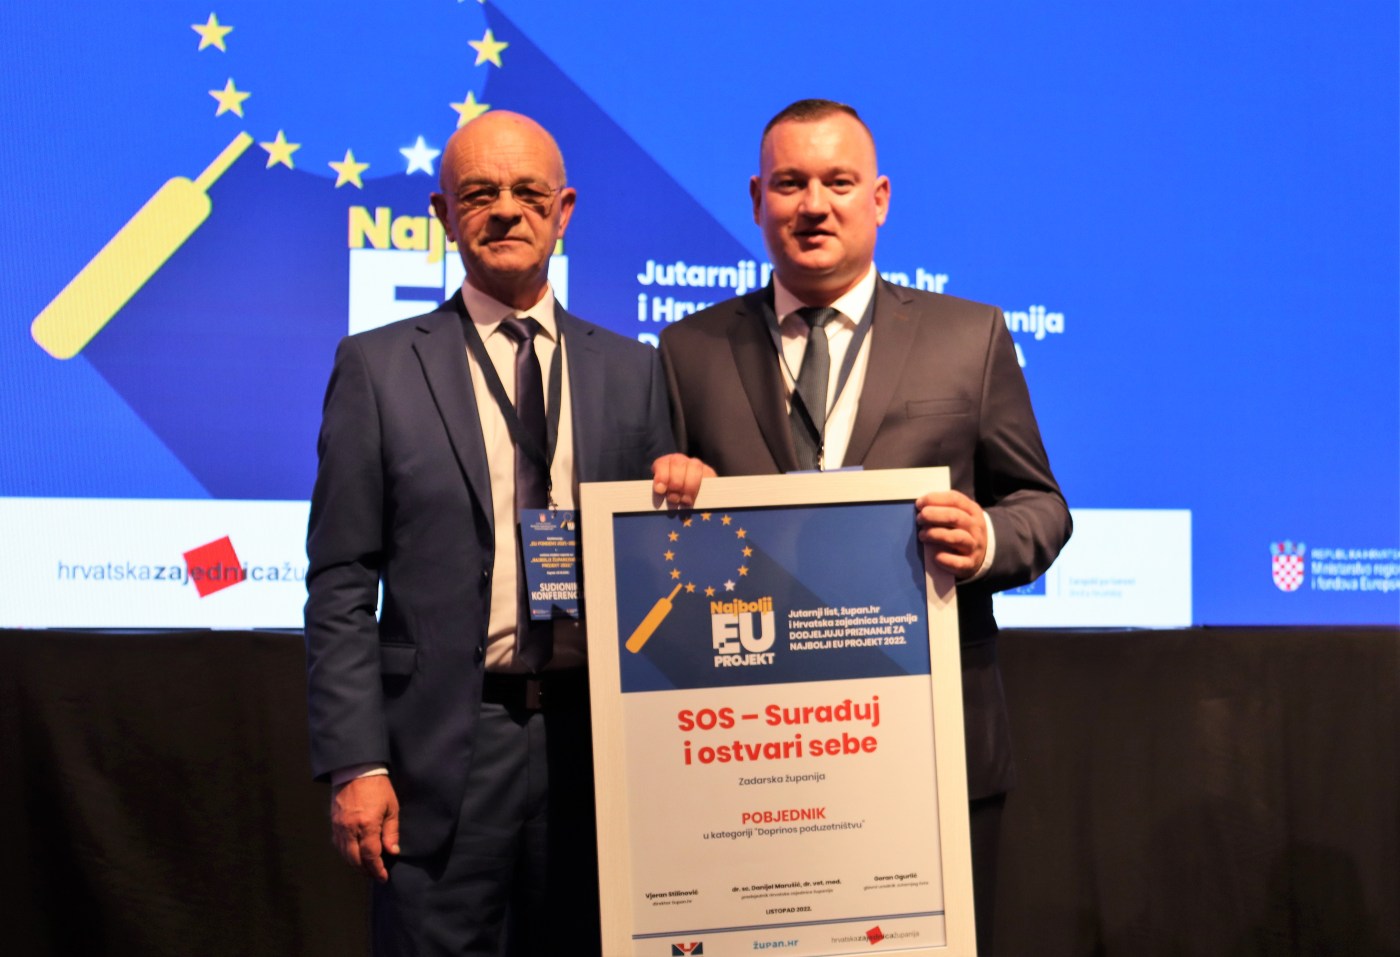 PRIZNANJE ZA PROJEKT AGENCIJE ZADRA NOVA I ZADARSKE ŽUPANIJE: Projekt „SOS – surađuj i ostvari sebe“ proglašen najboljim EU projektom